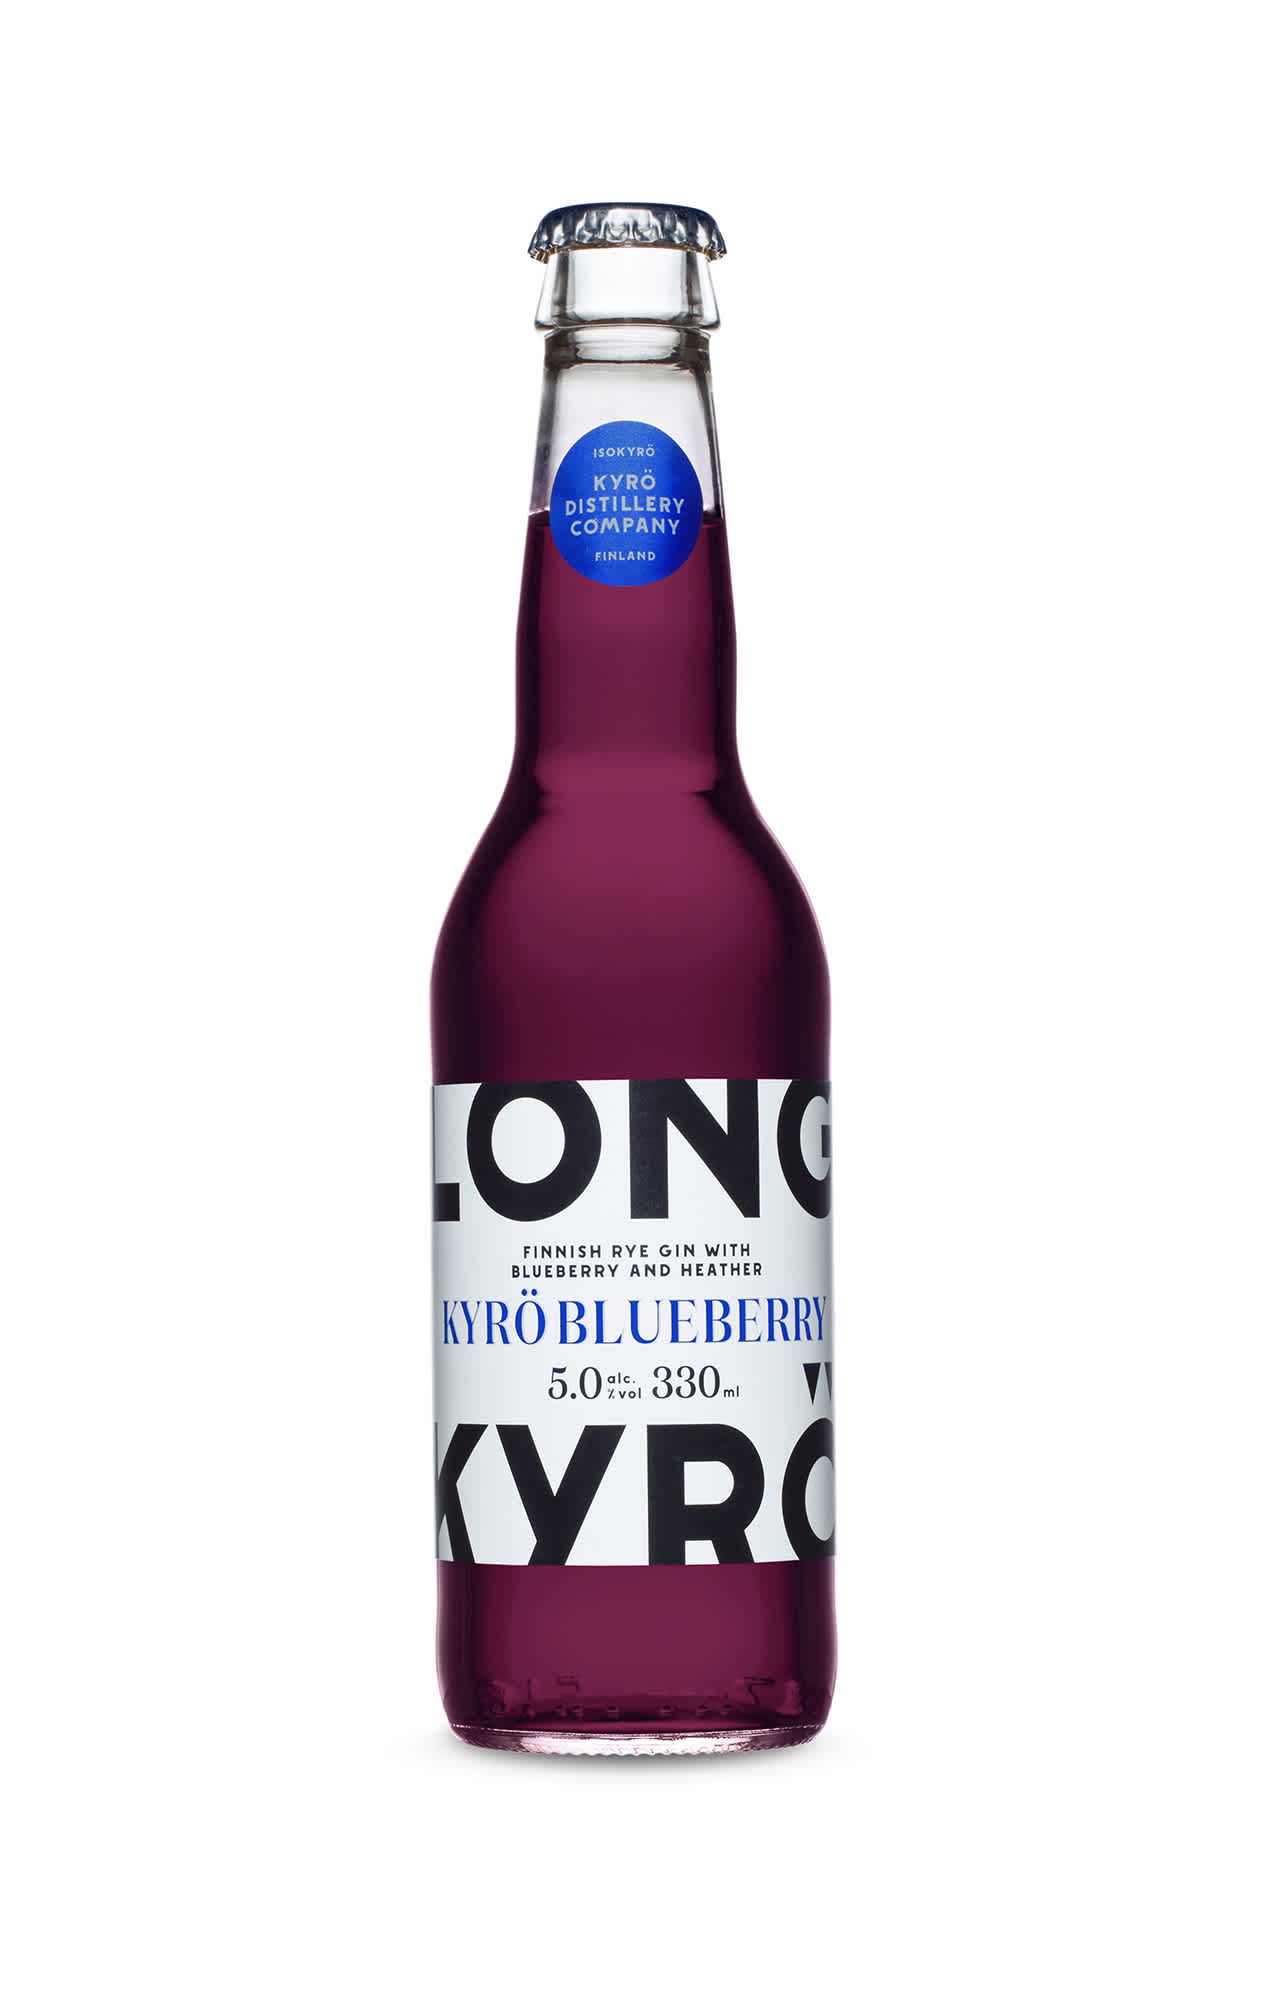 Kyrö Blueberry Longdrink in a bottle.